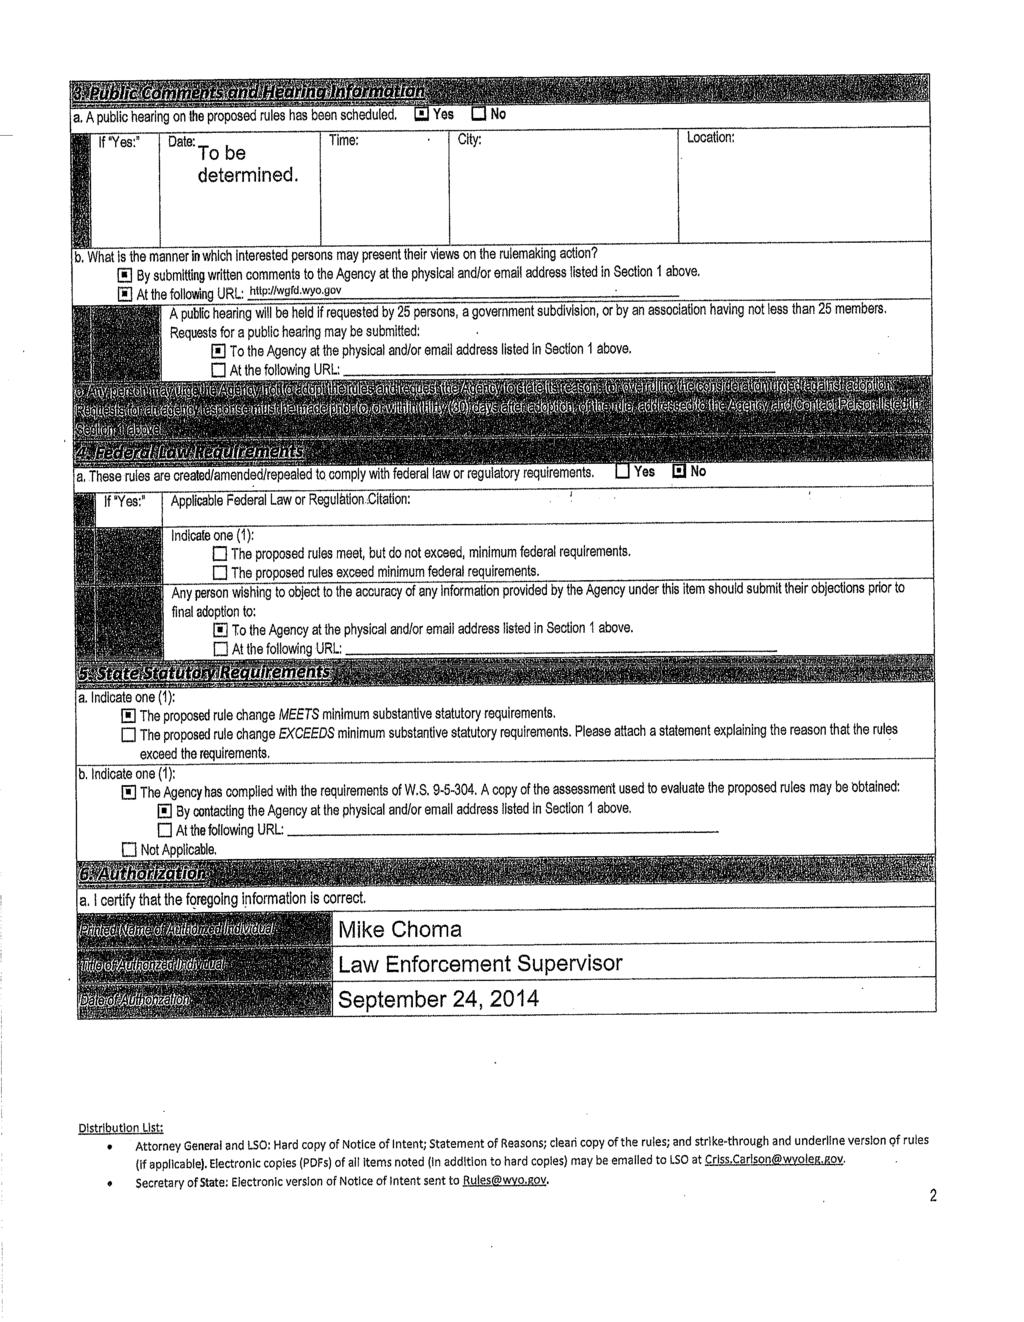 Case 1:12-cv-01833-ABJ Document